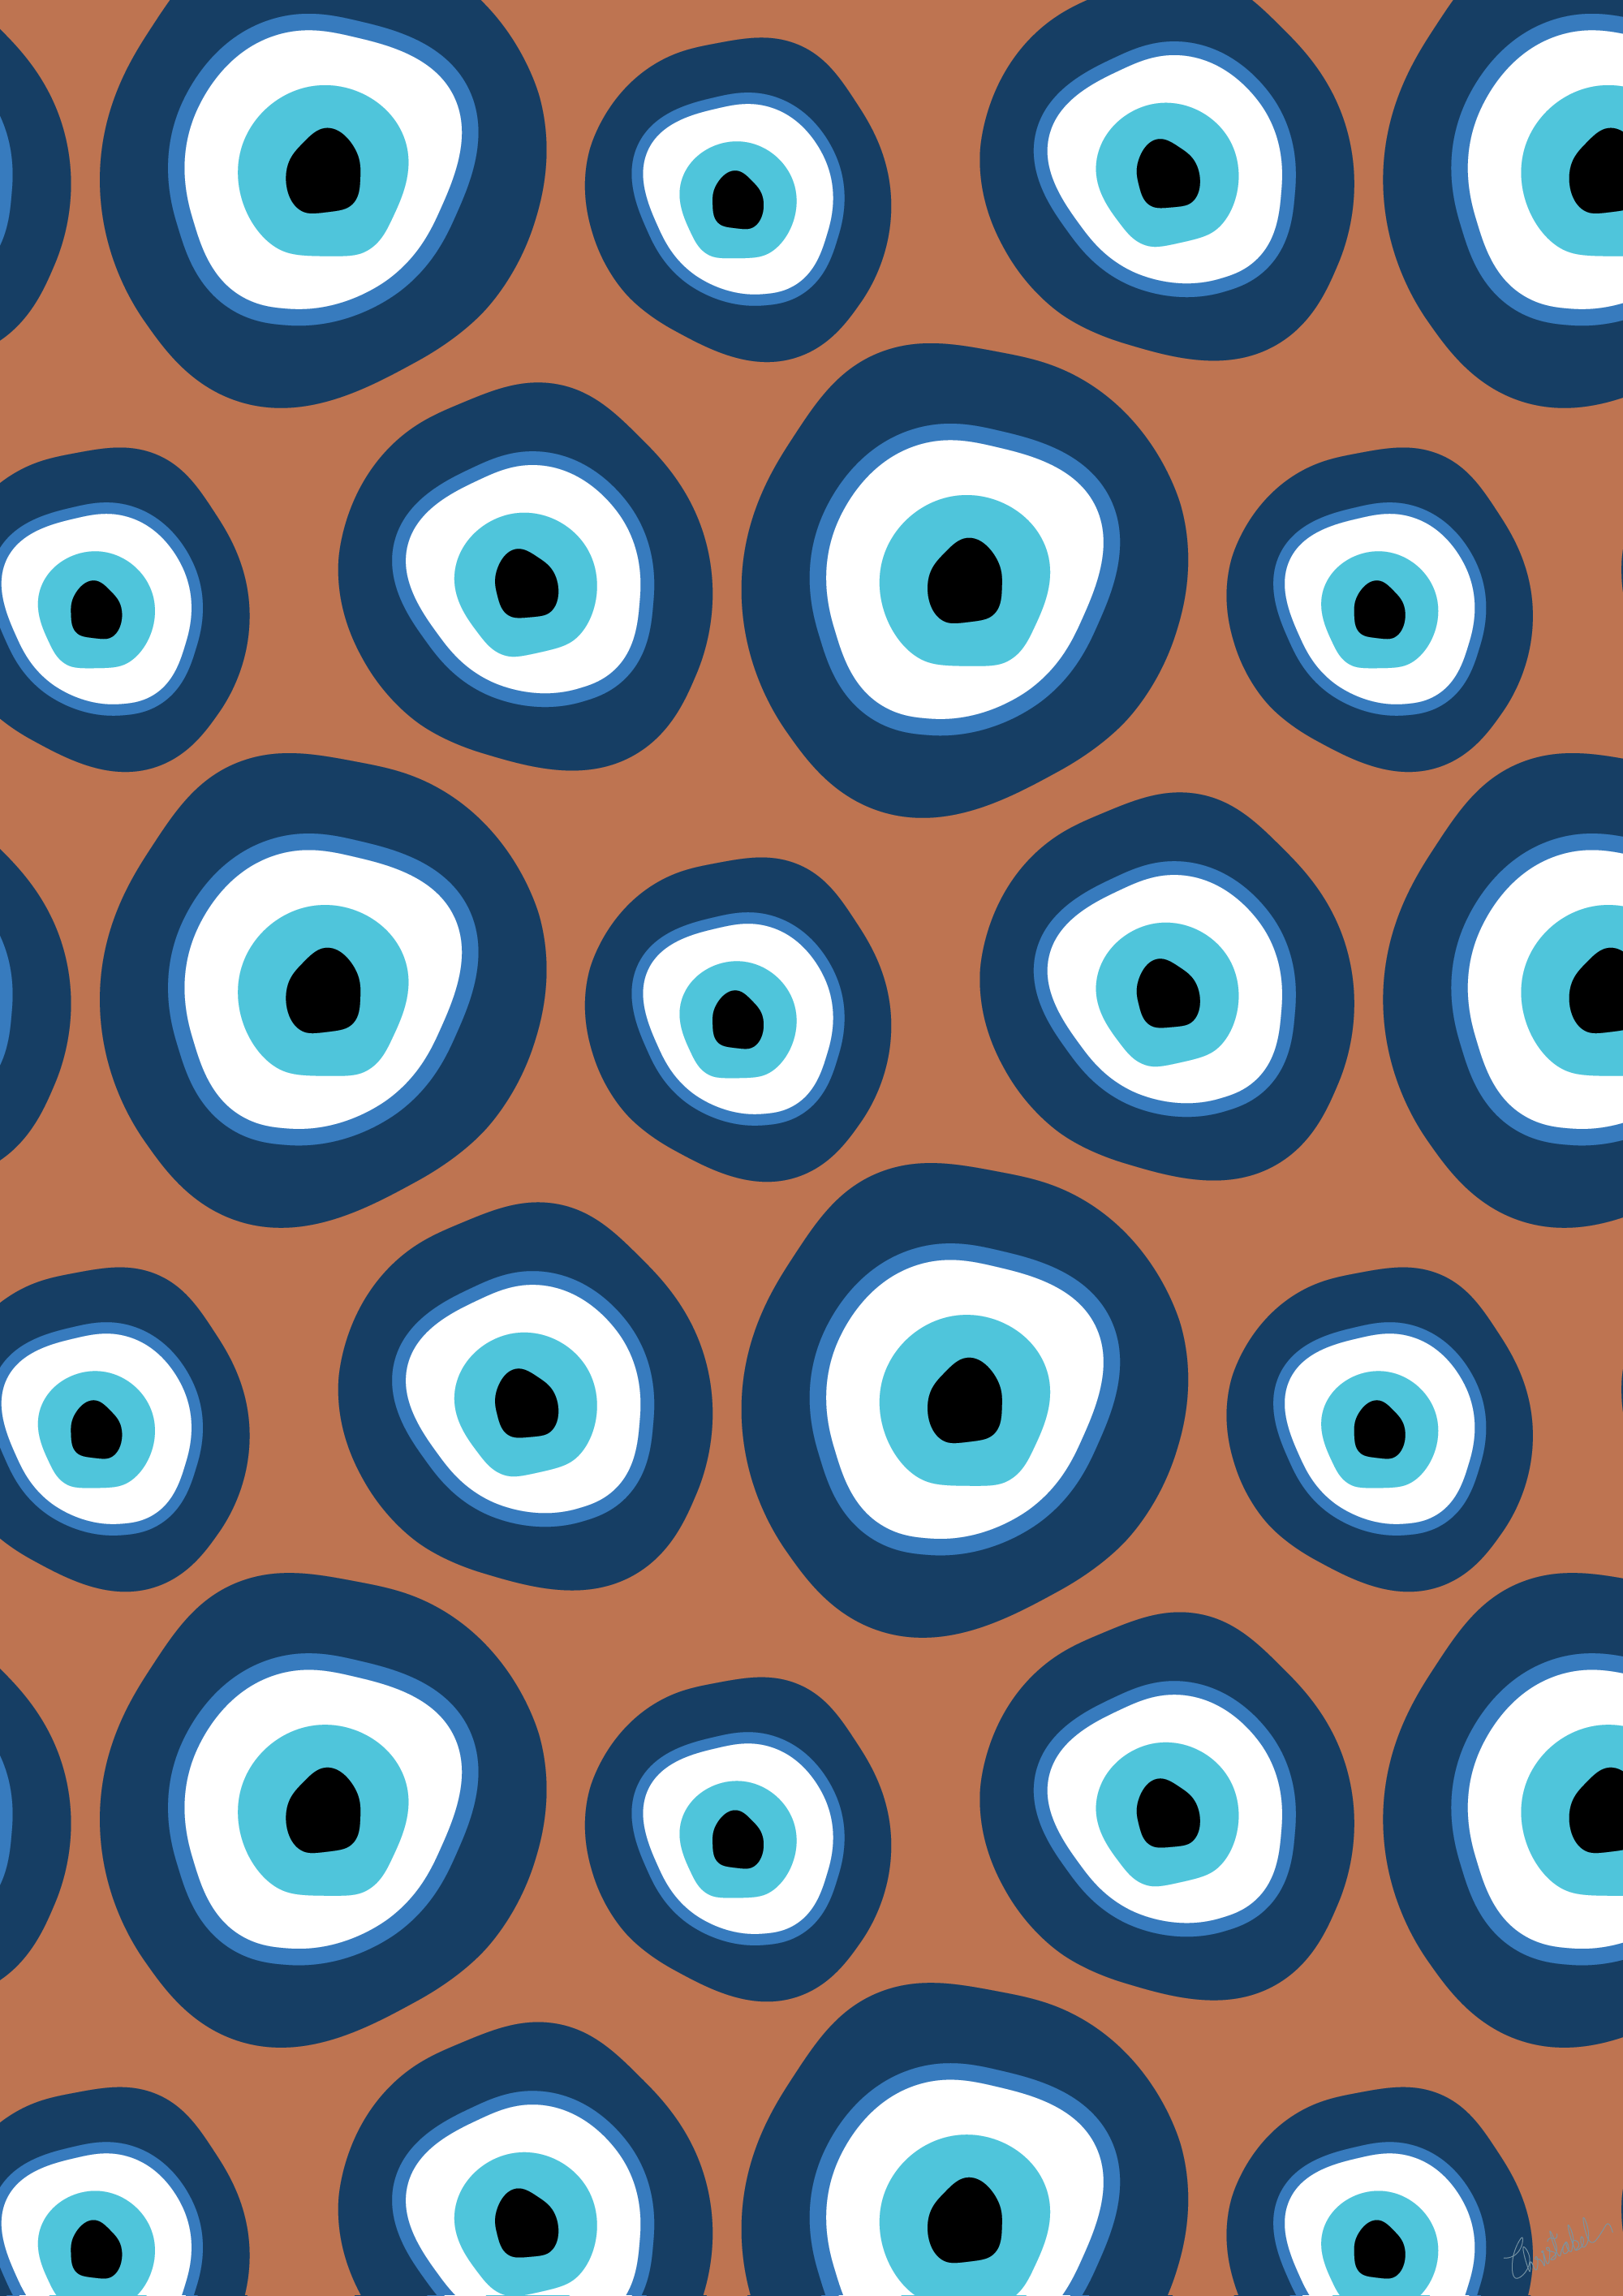 Aggregate 81+ eye pattern wallpaper best - xkldase.edu.vn